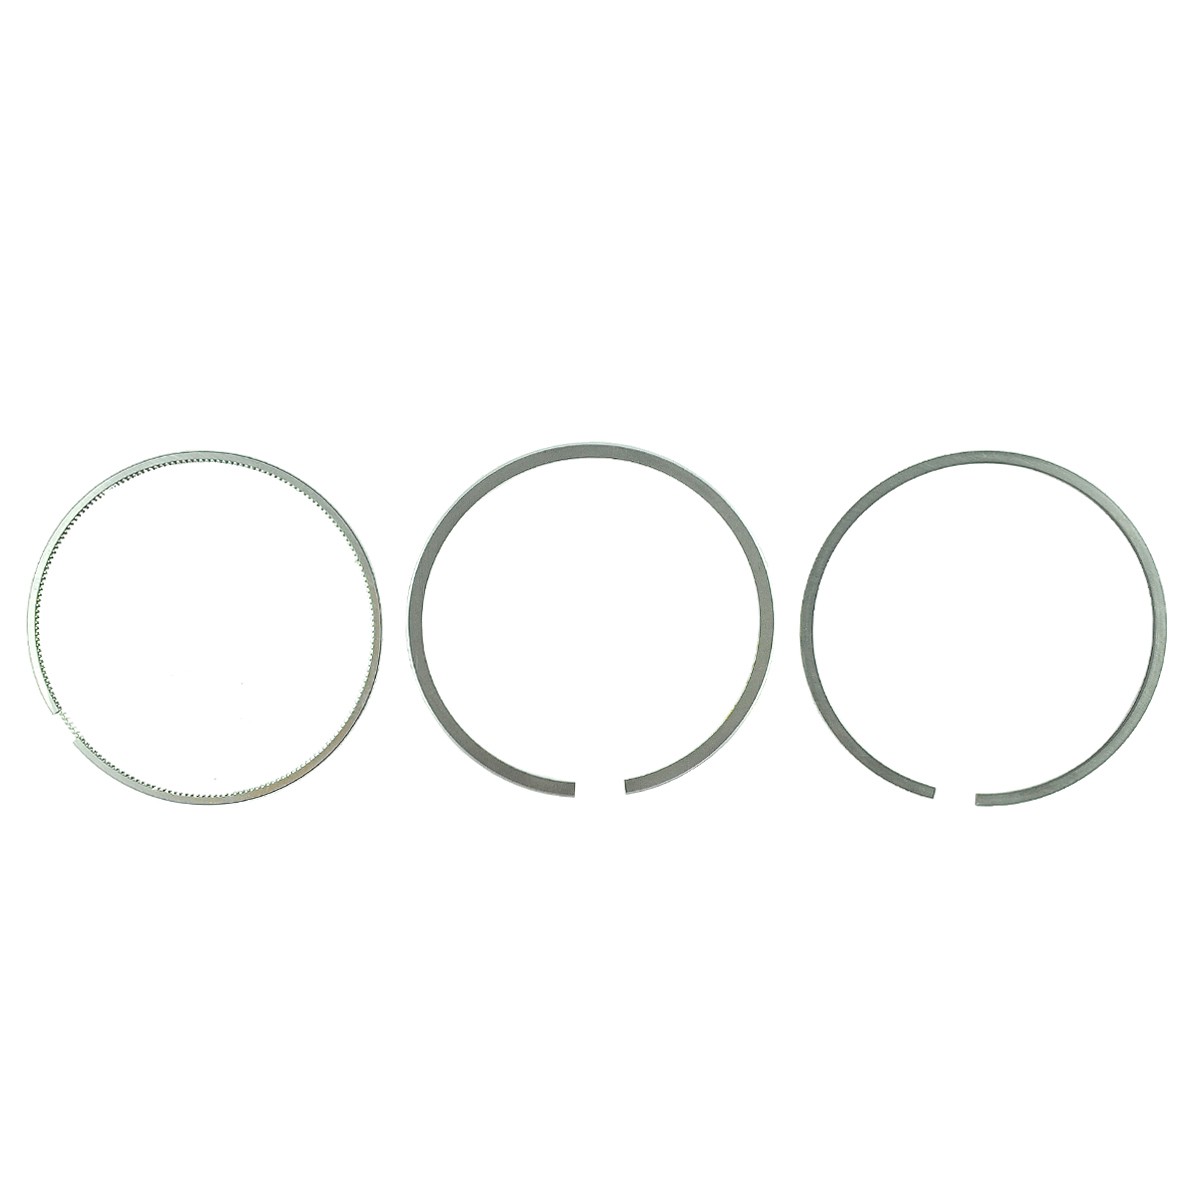 Piston rings / Ø 88 mm / 2.00 x 2.00 x 4.00 mm / Yanmar 3TNV84/4TNV84/3TNV88/4TNV88 / Yanmar EF352T/EF453T / 129004-22500